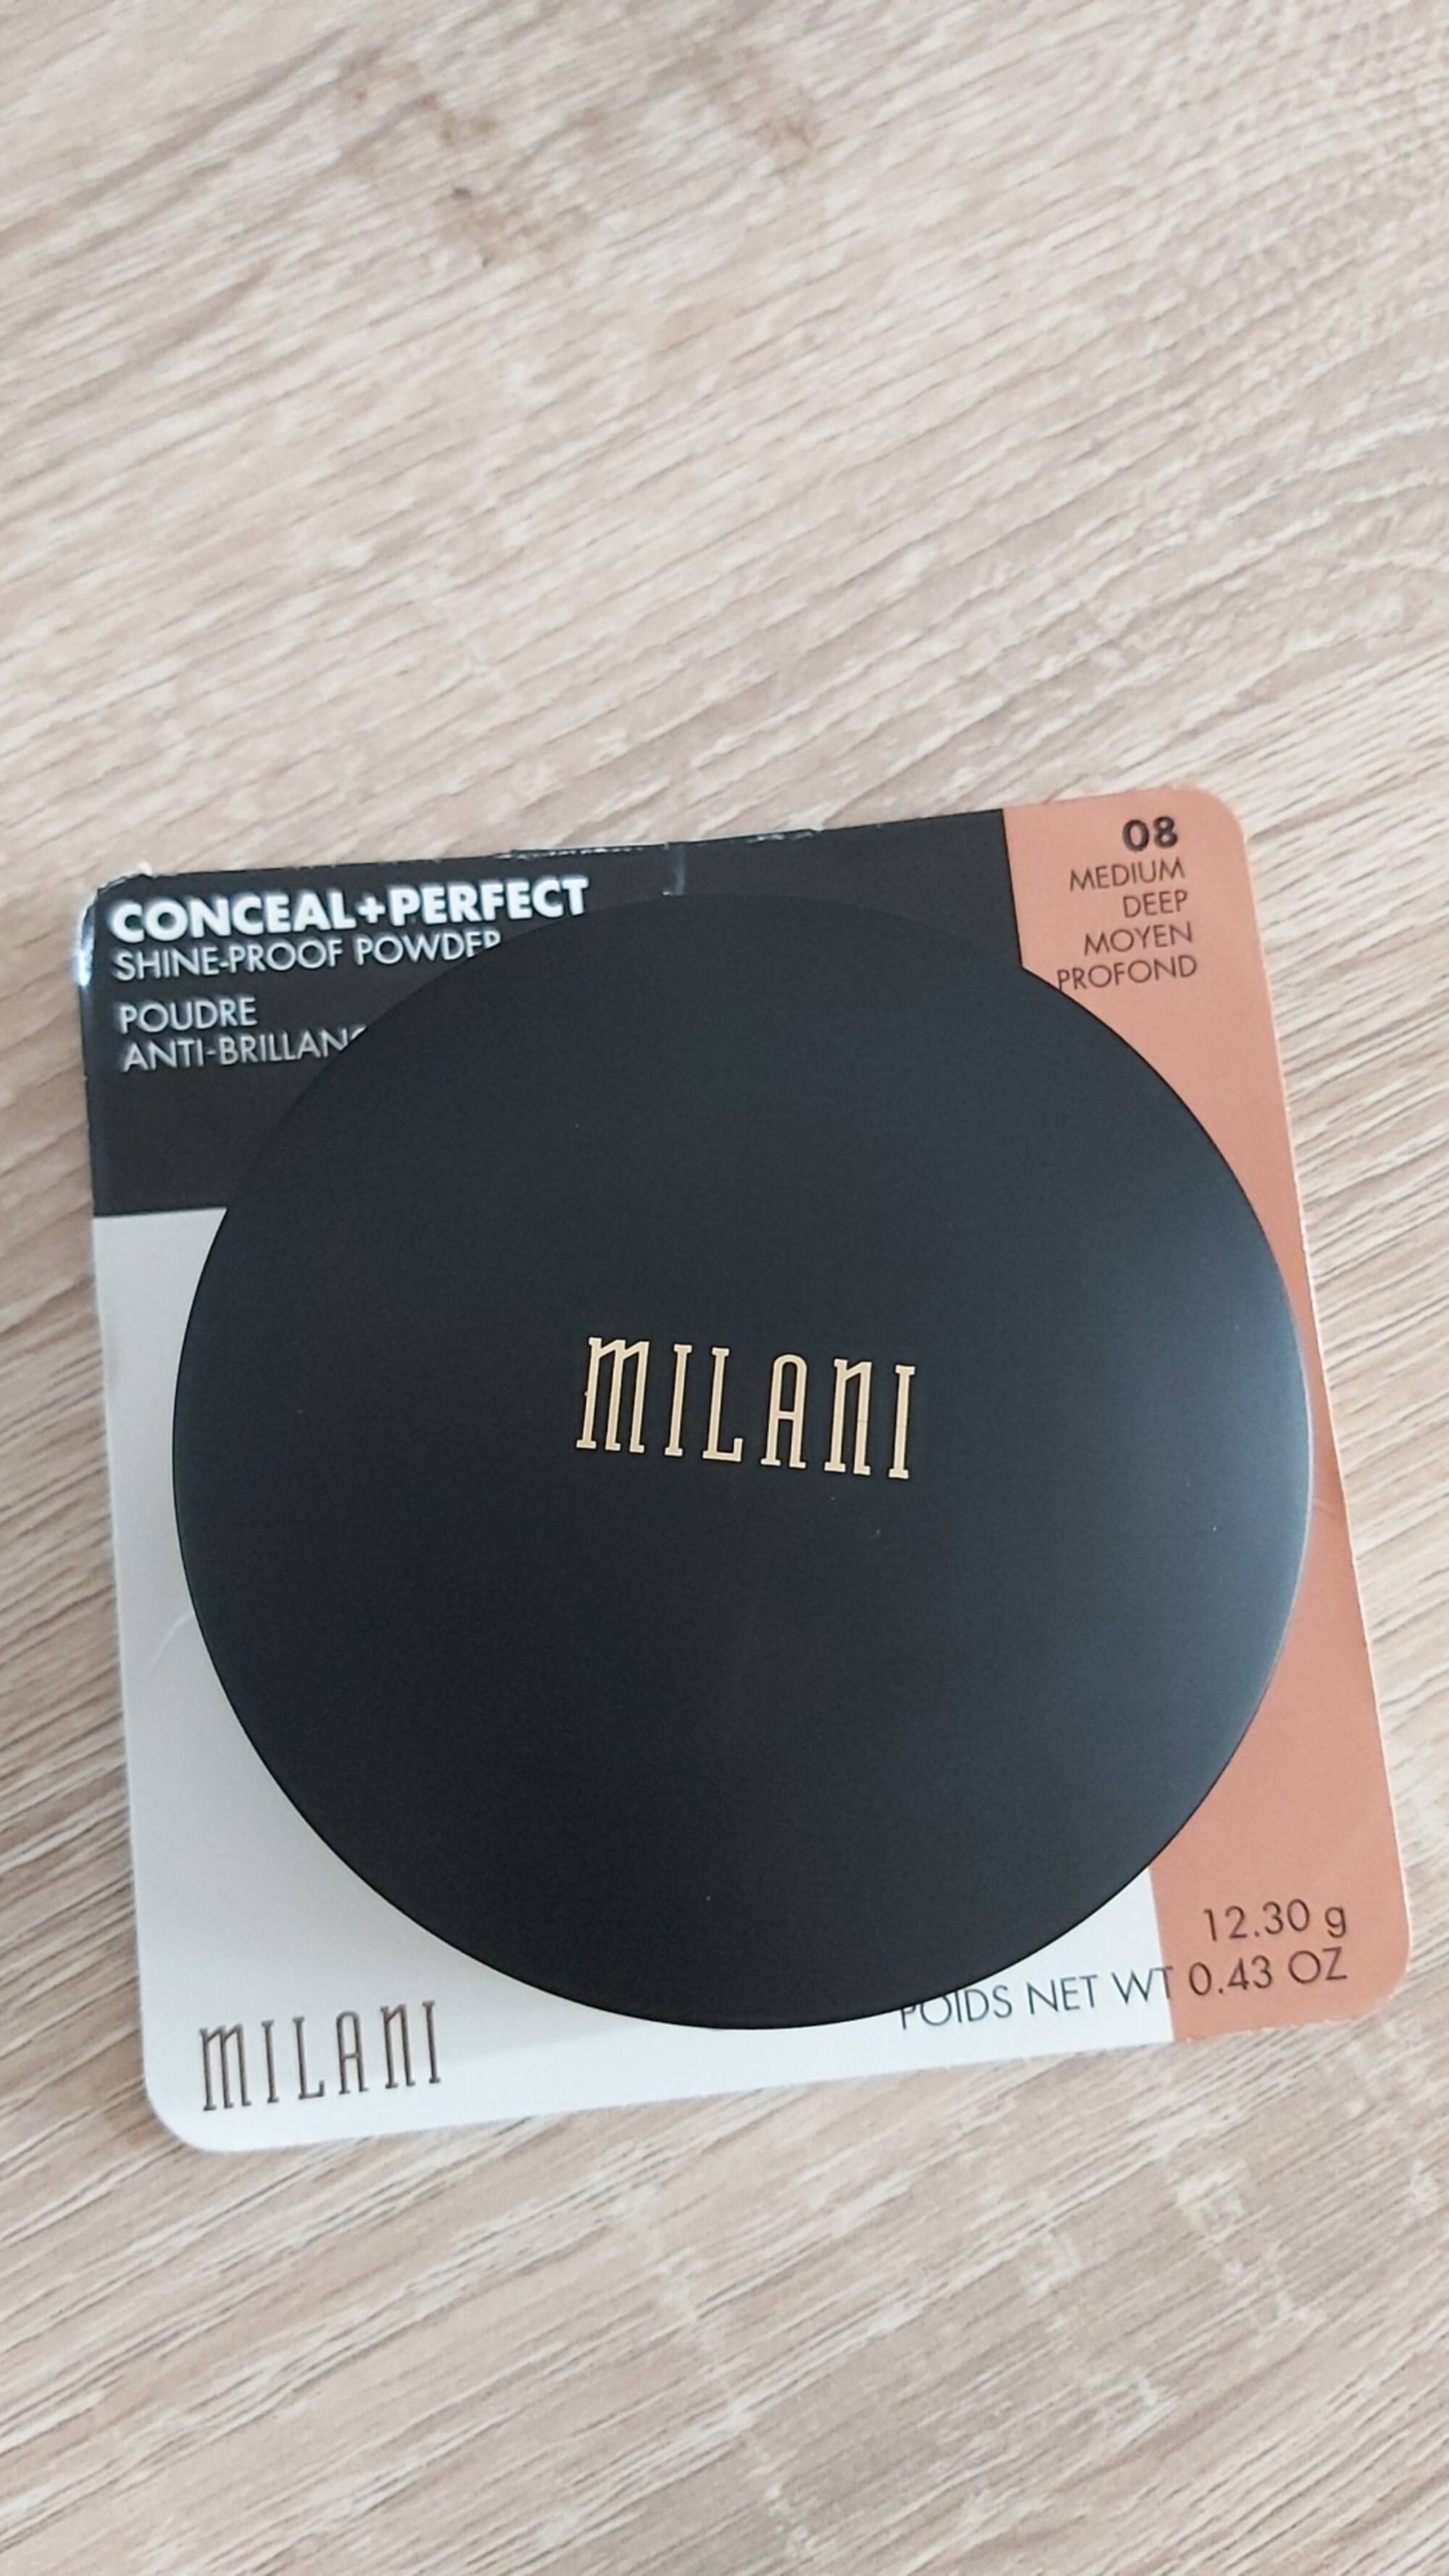 MILANI - Conceal + perfect - Poudre anti-brillance